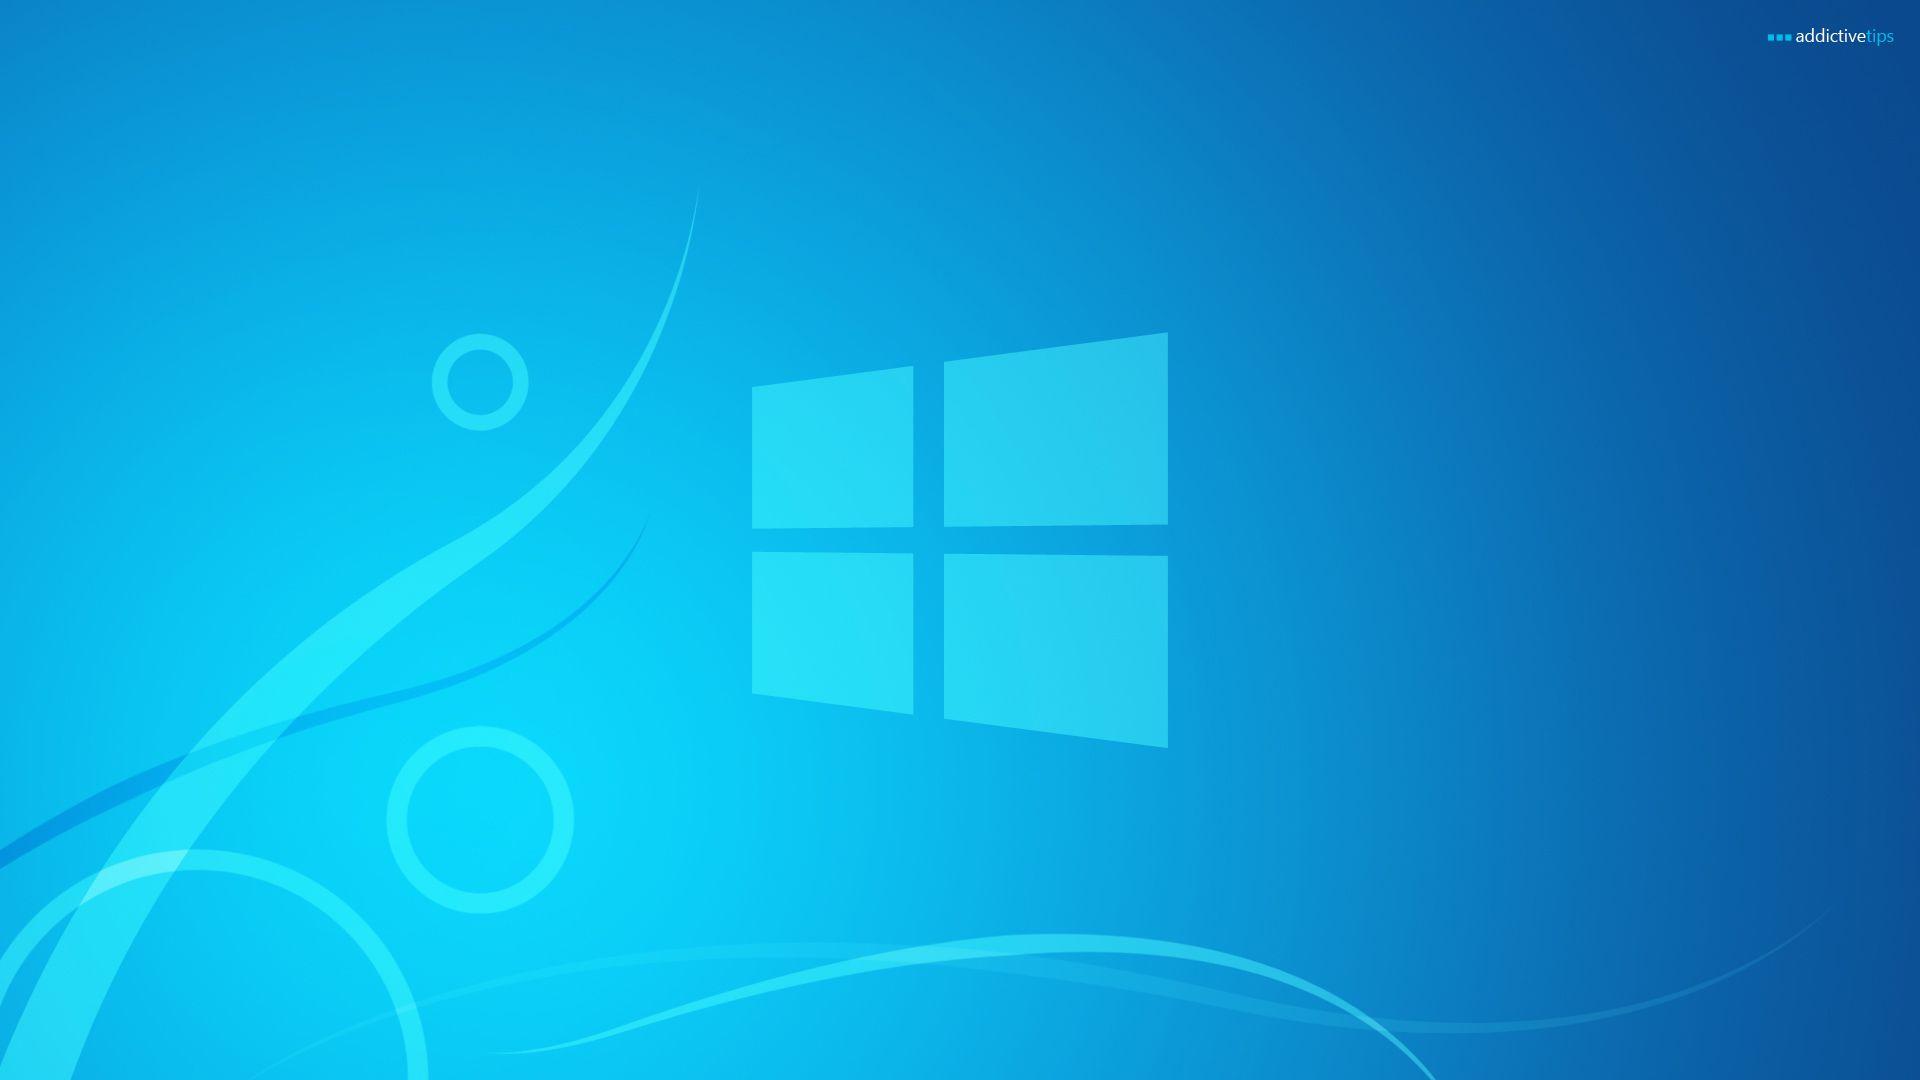 Hãy trải nghiệm sự lôi cuốn của Windows 8 với những hình nền tuyệt đẹp, sắc nét và chất lượng HD, chắc chắn sẽ khiến bạn có một trải nghiệm đáng nhớ trên màn hình máy tính của mình.